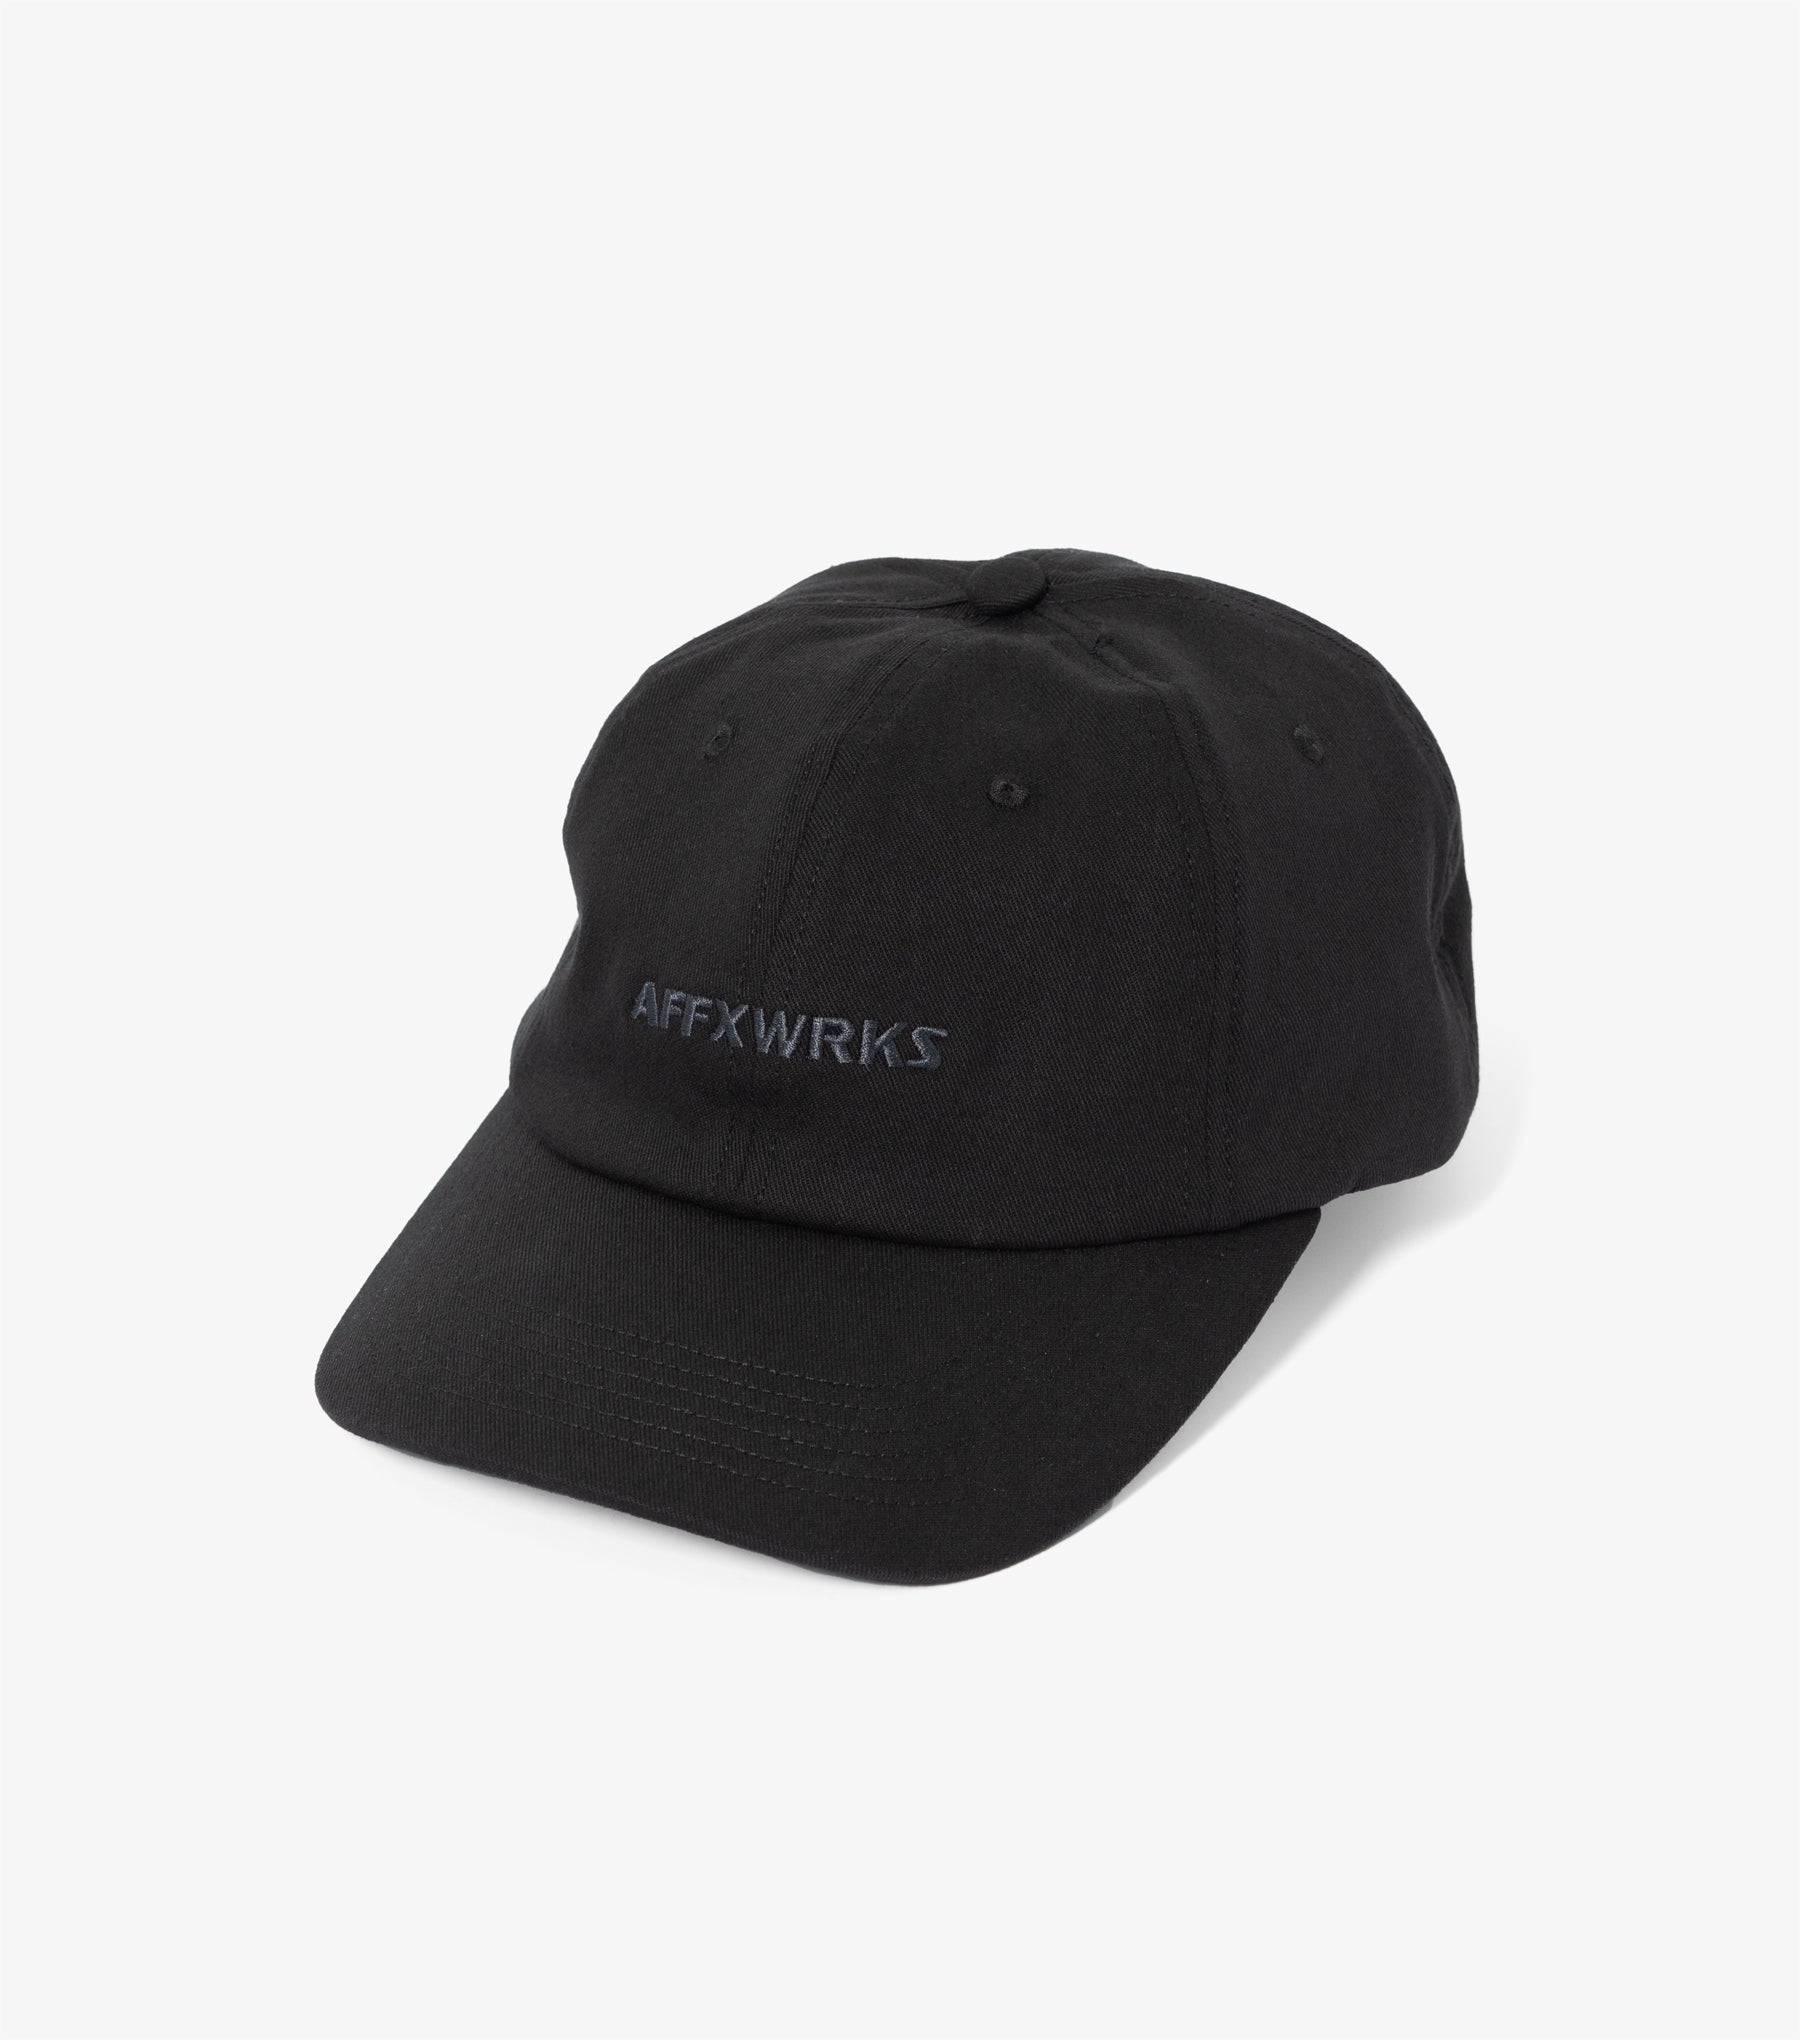 Affxwrks Cap (Black)